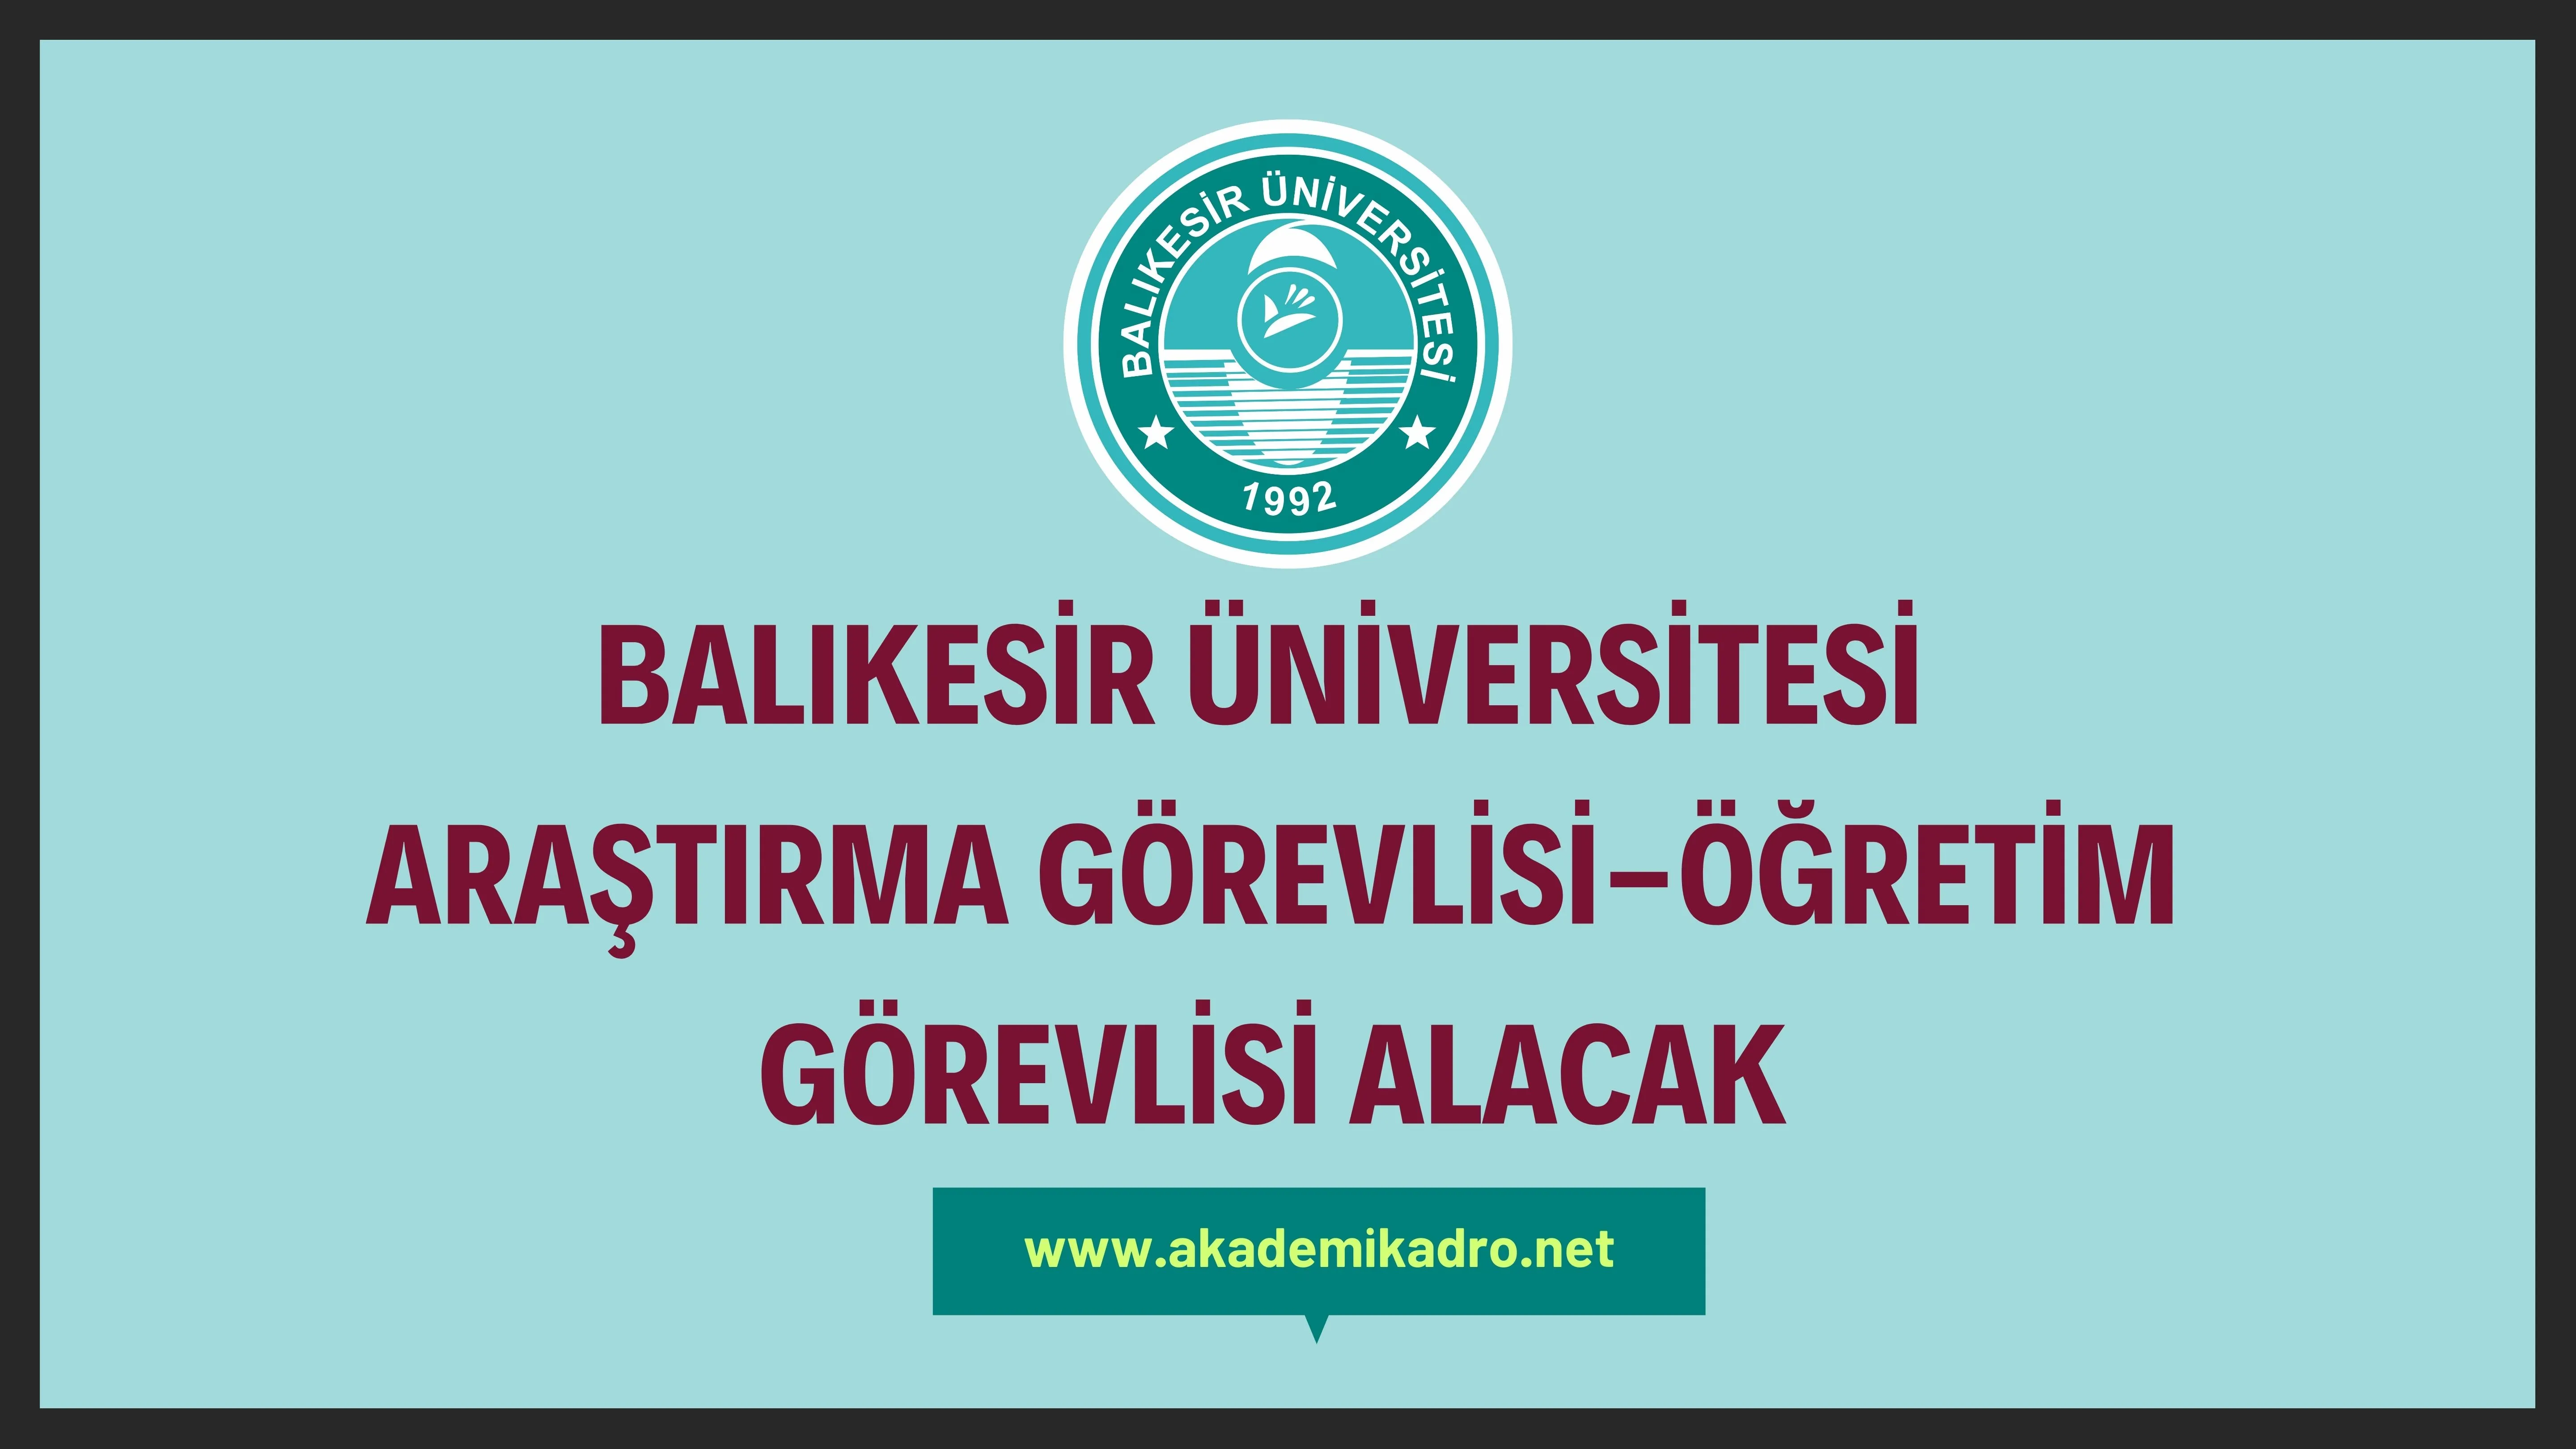 Balıkesir Üniversitesi 4 Araştırma görevlisi ve 6 Öğretim görevlisi alacak.